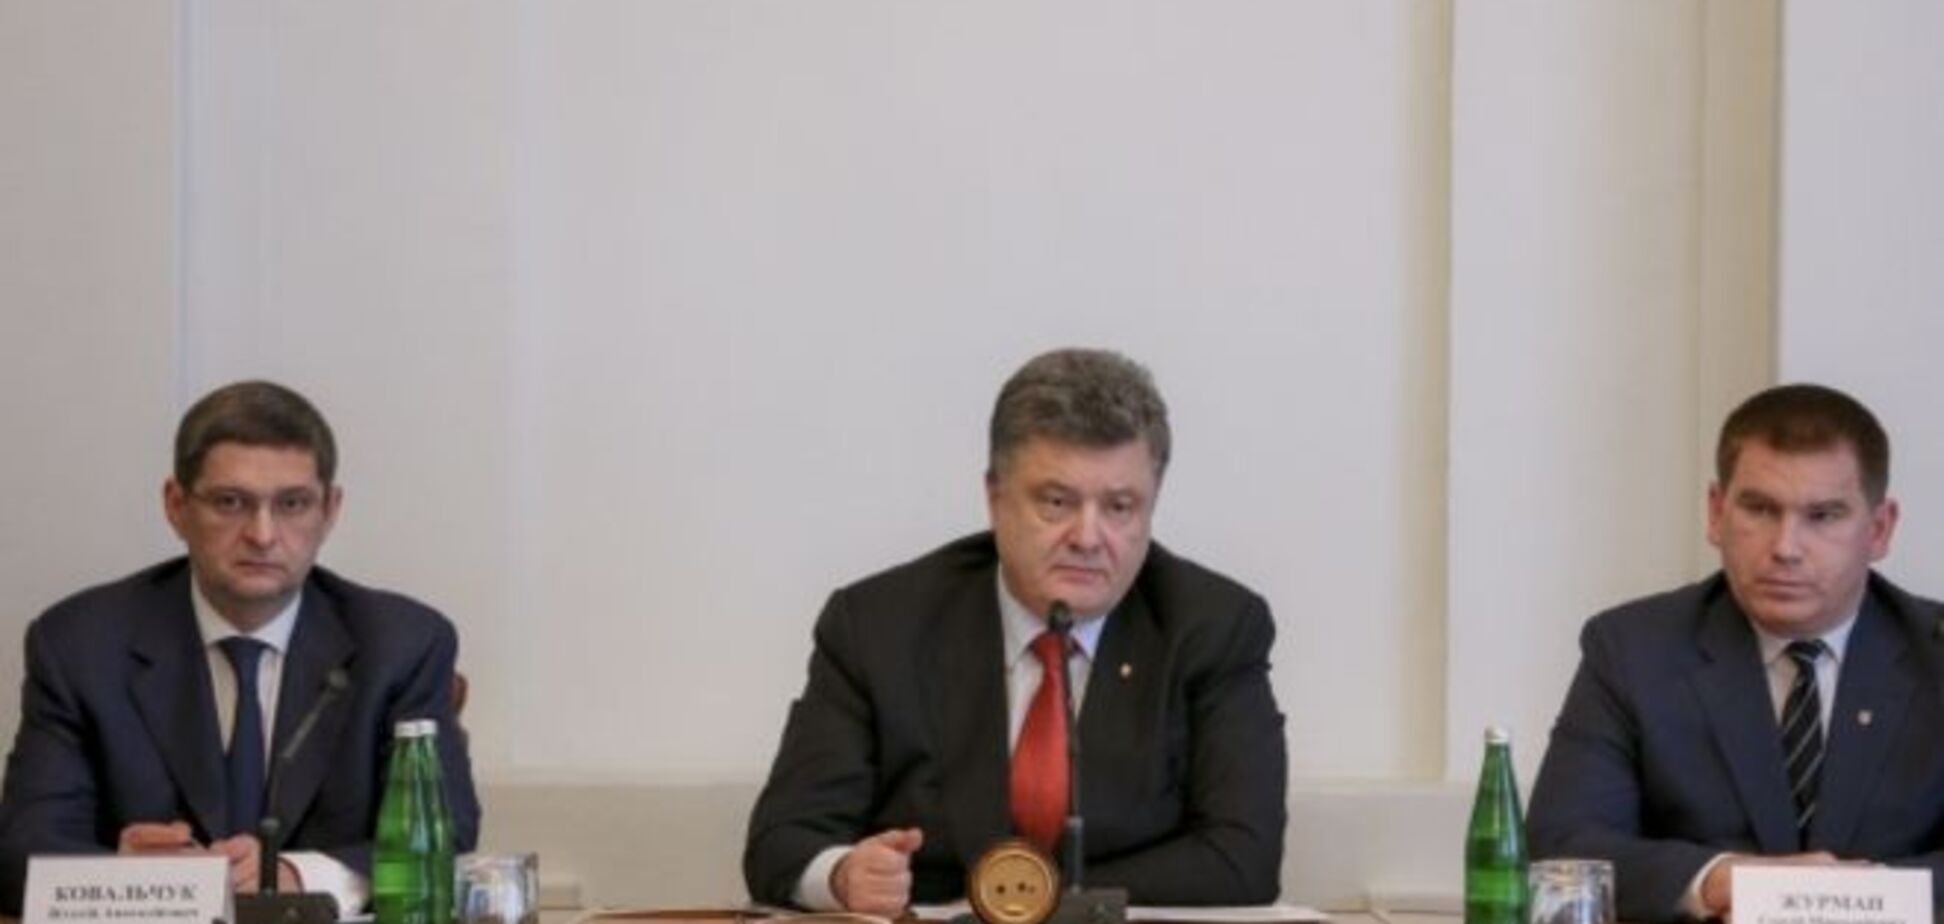 Порошенко согласился вынести на референдум вопрос федерализации Украины 